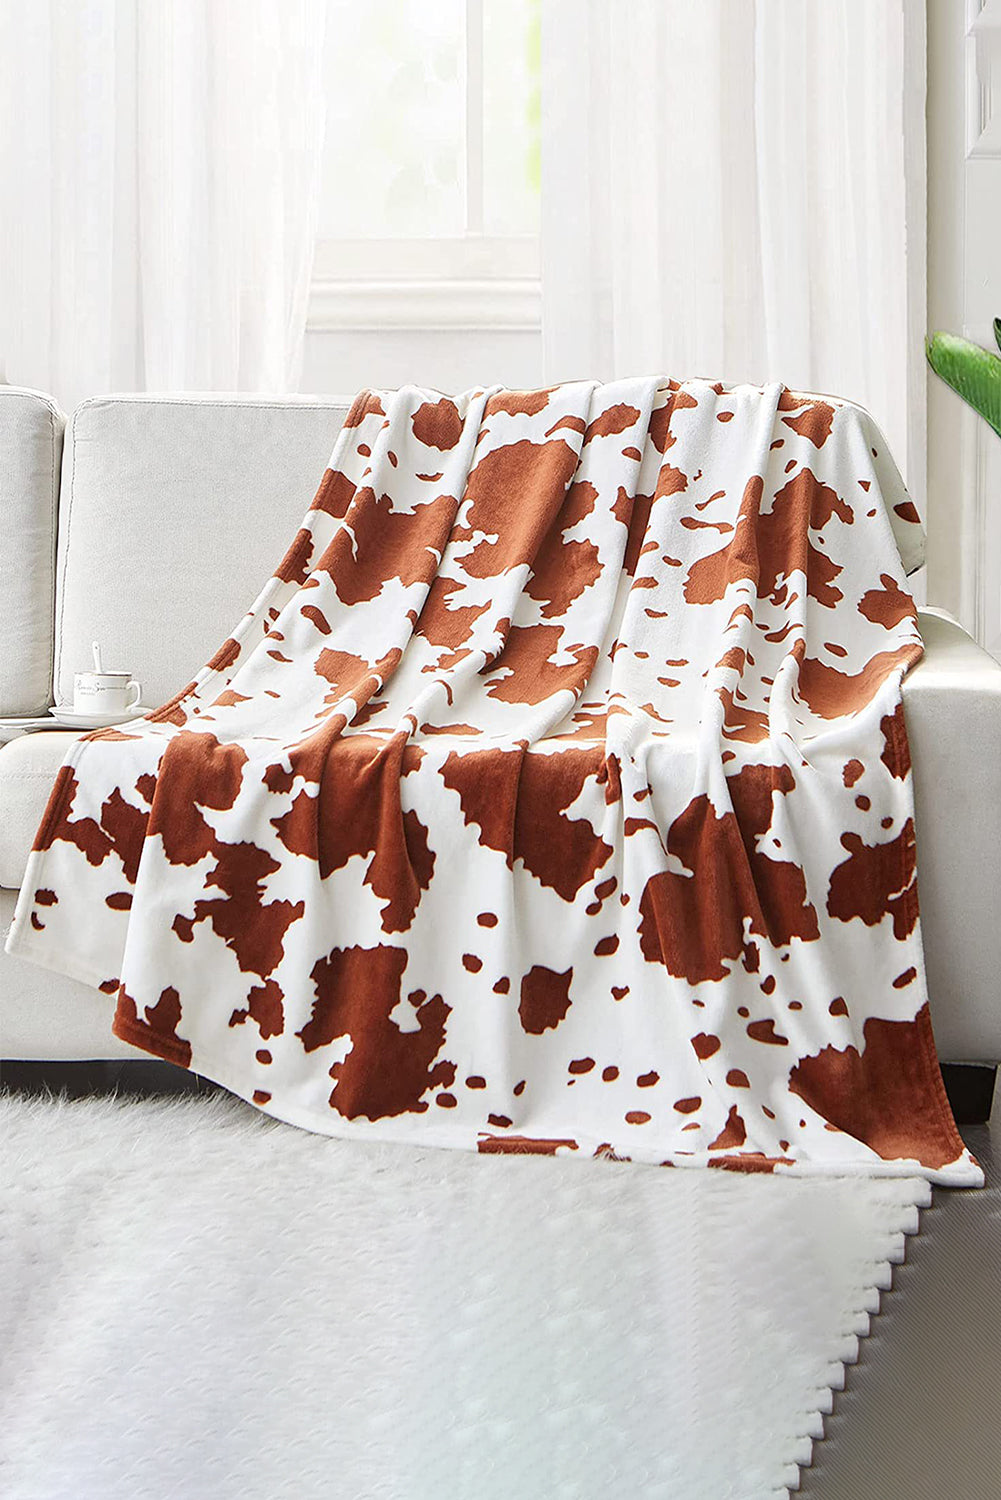 Chestnut 150*200cm Animal Print Flannel Large Blanket